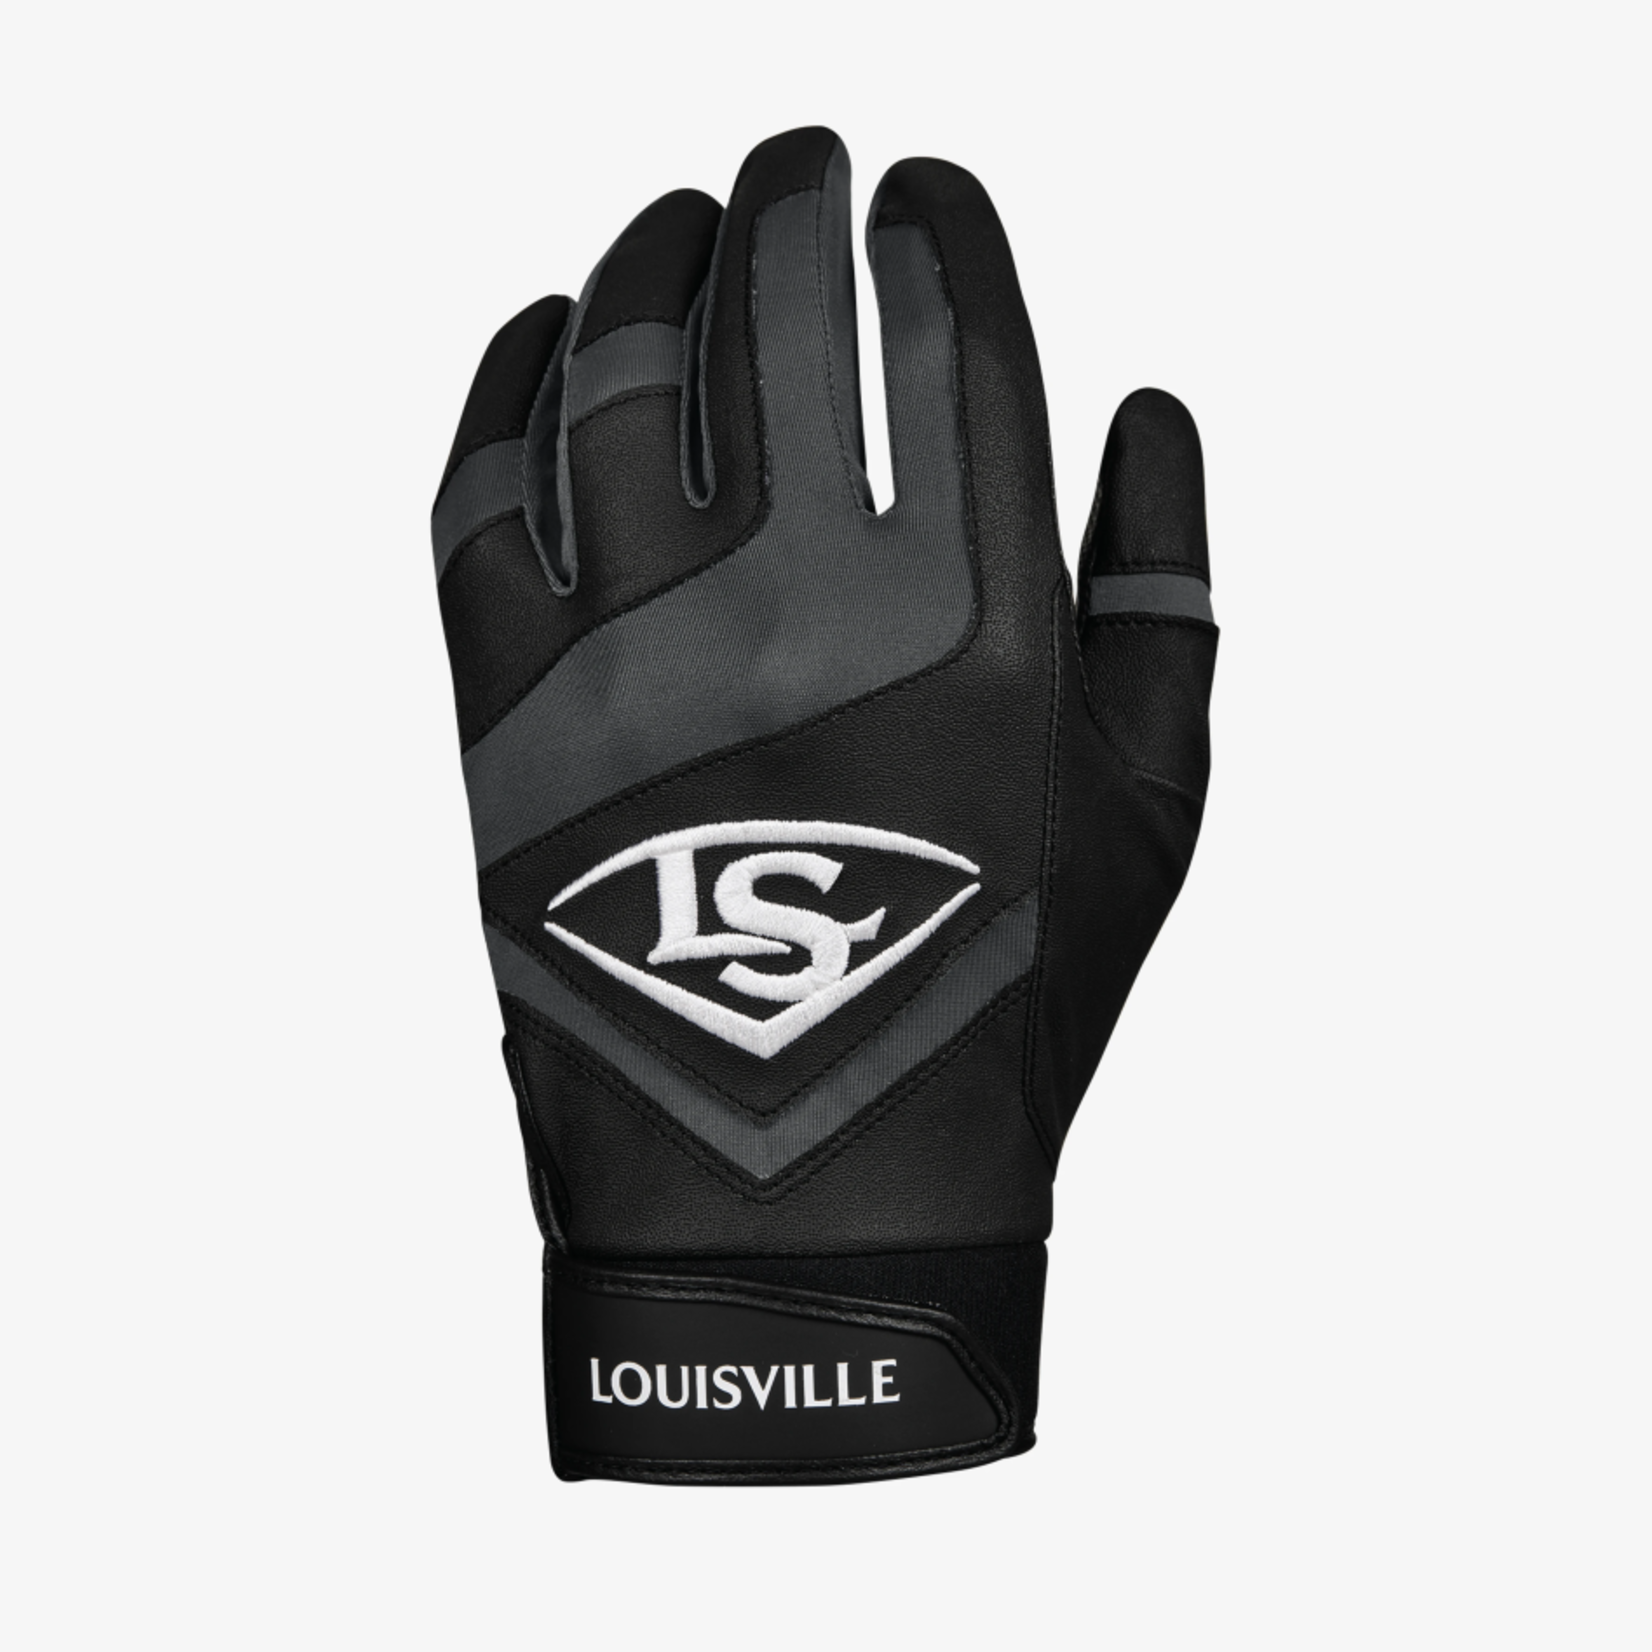 Louisville Louisville Batting Gloves, Genuine, Adult